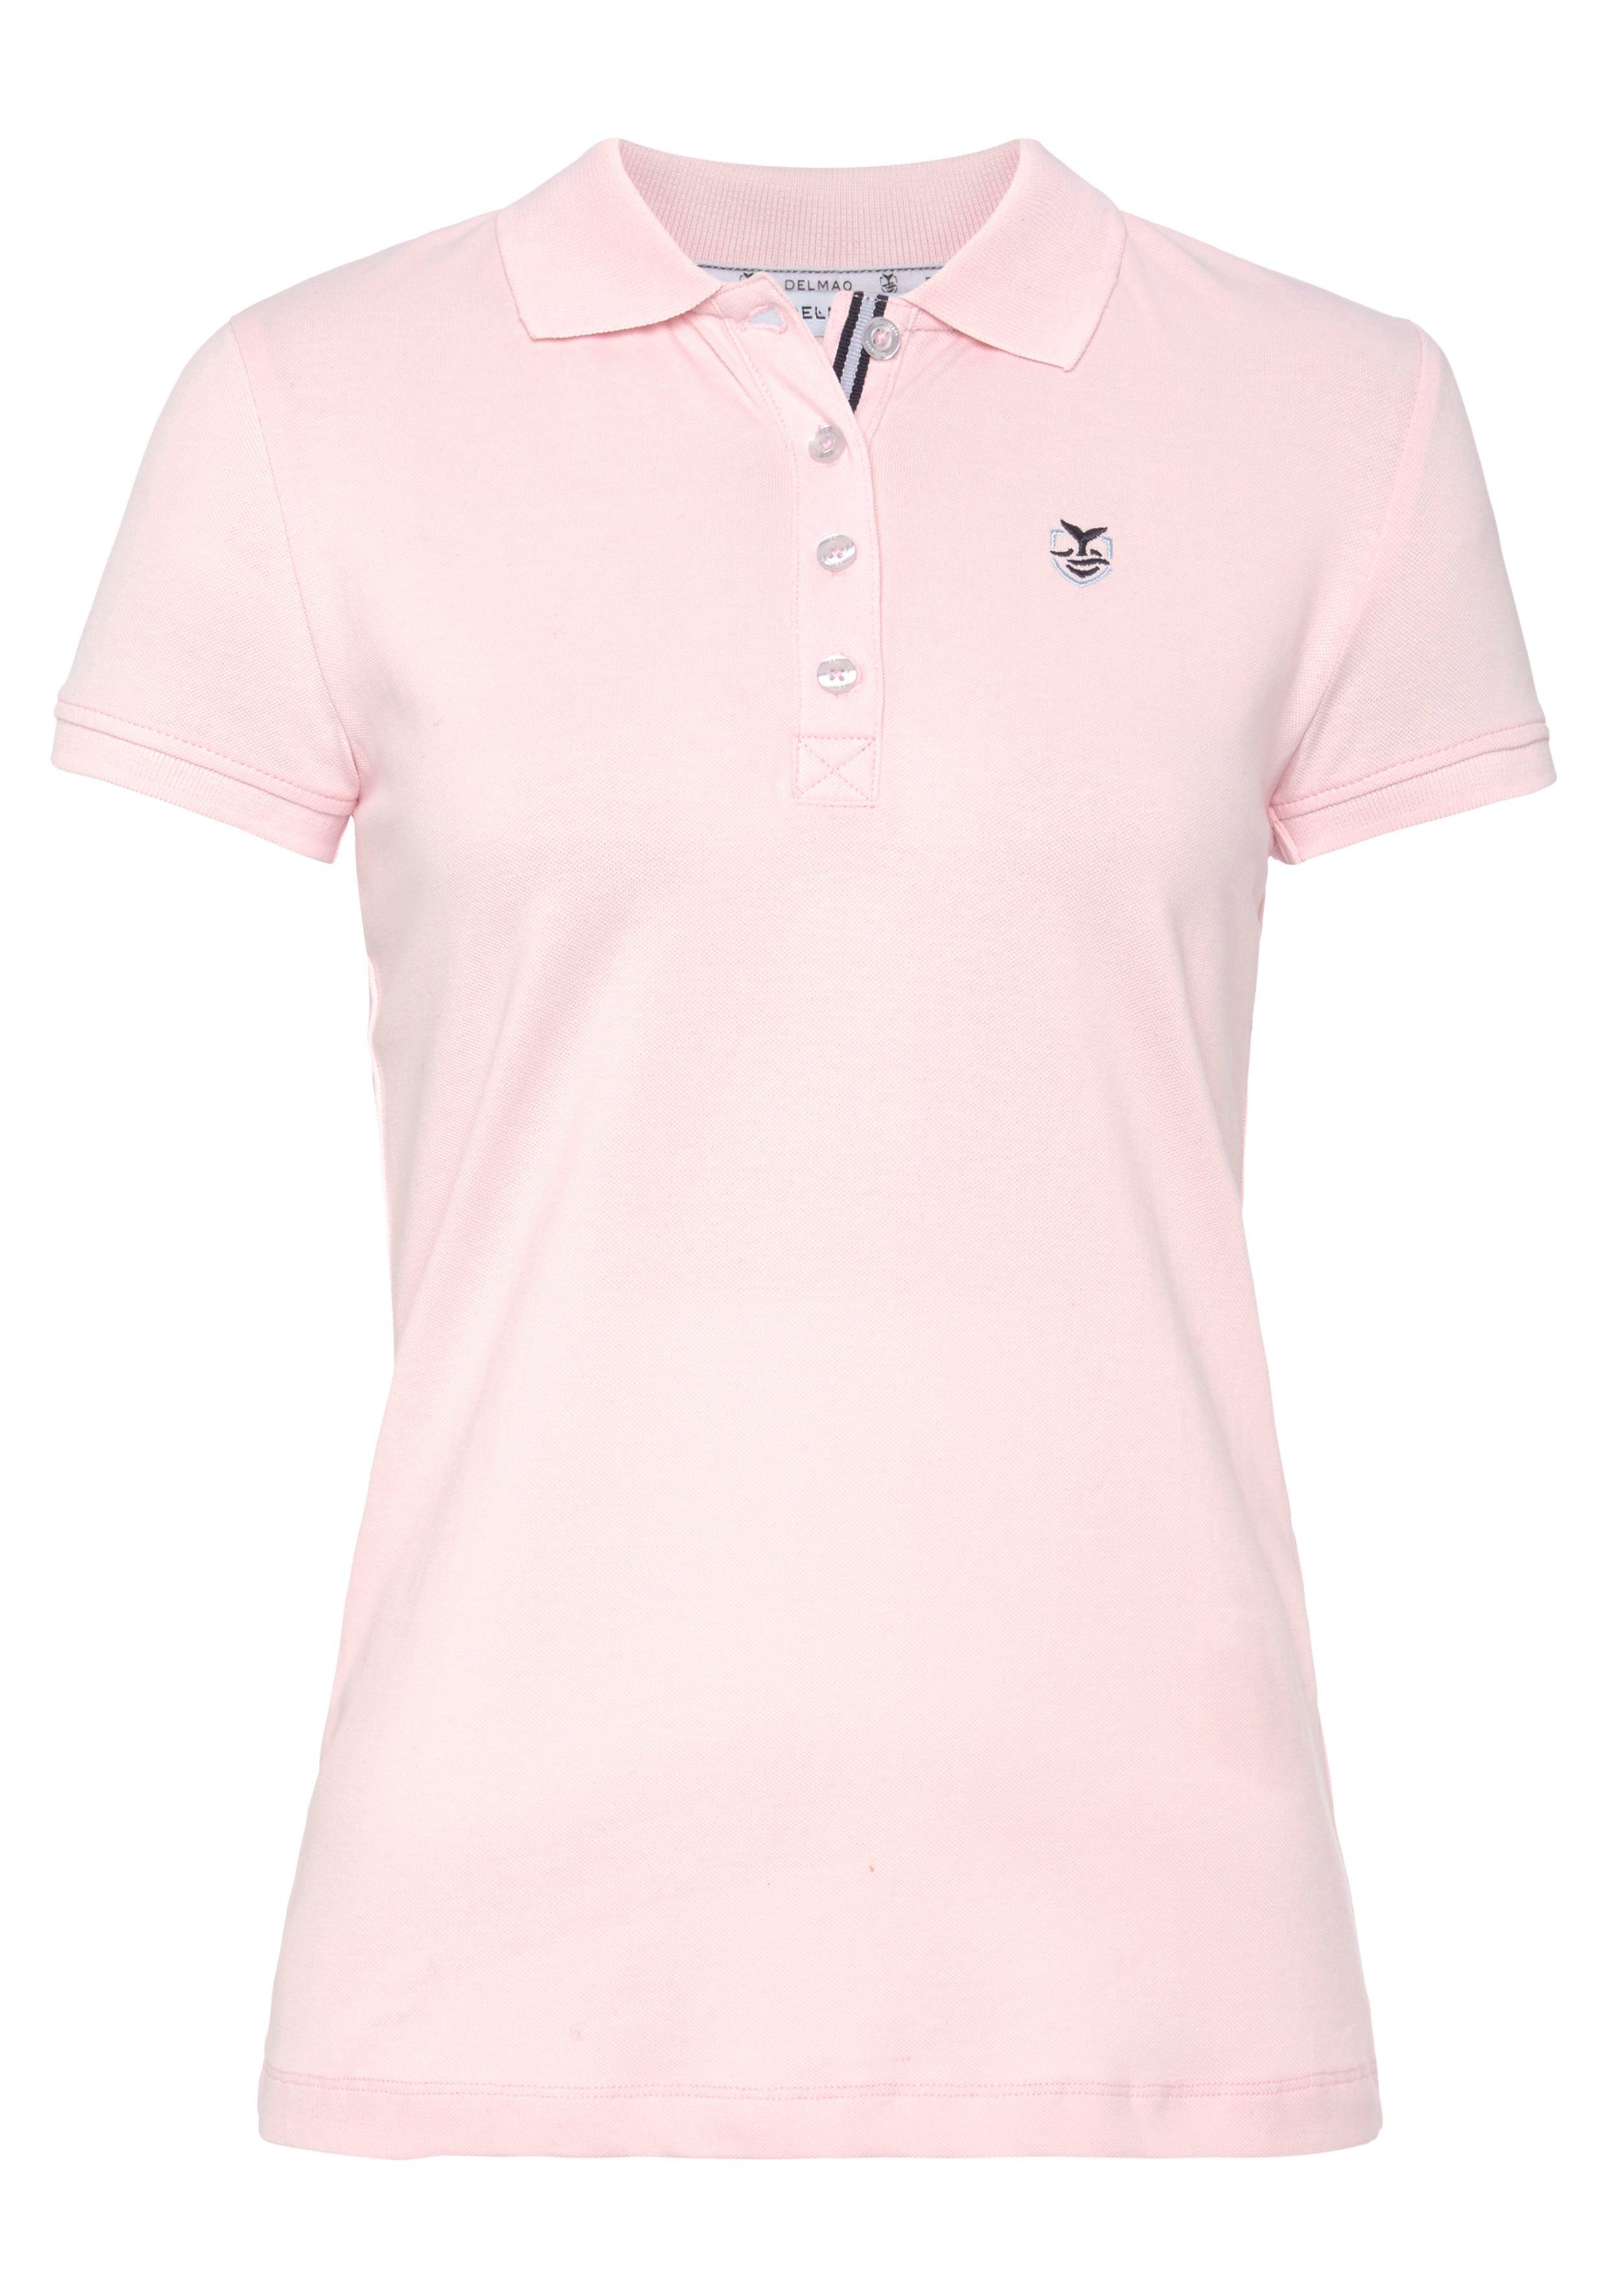 DELMAO Poloshirt in MARKE! Farben in klassischer verschiedenen - rosa Form NEUE